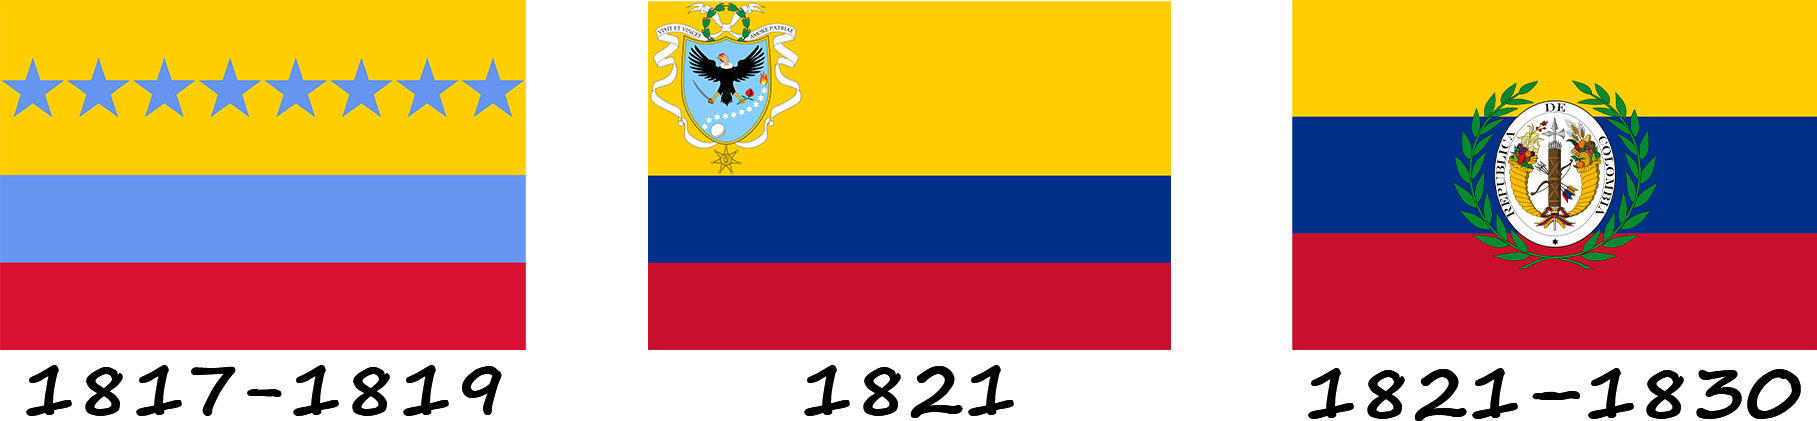 Historia de la bandera de Venezuela